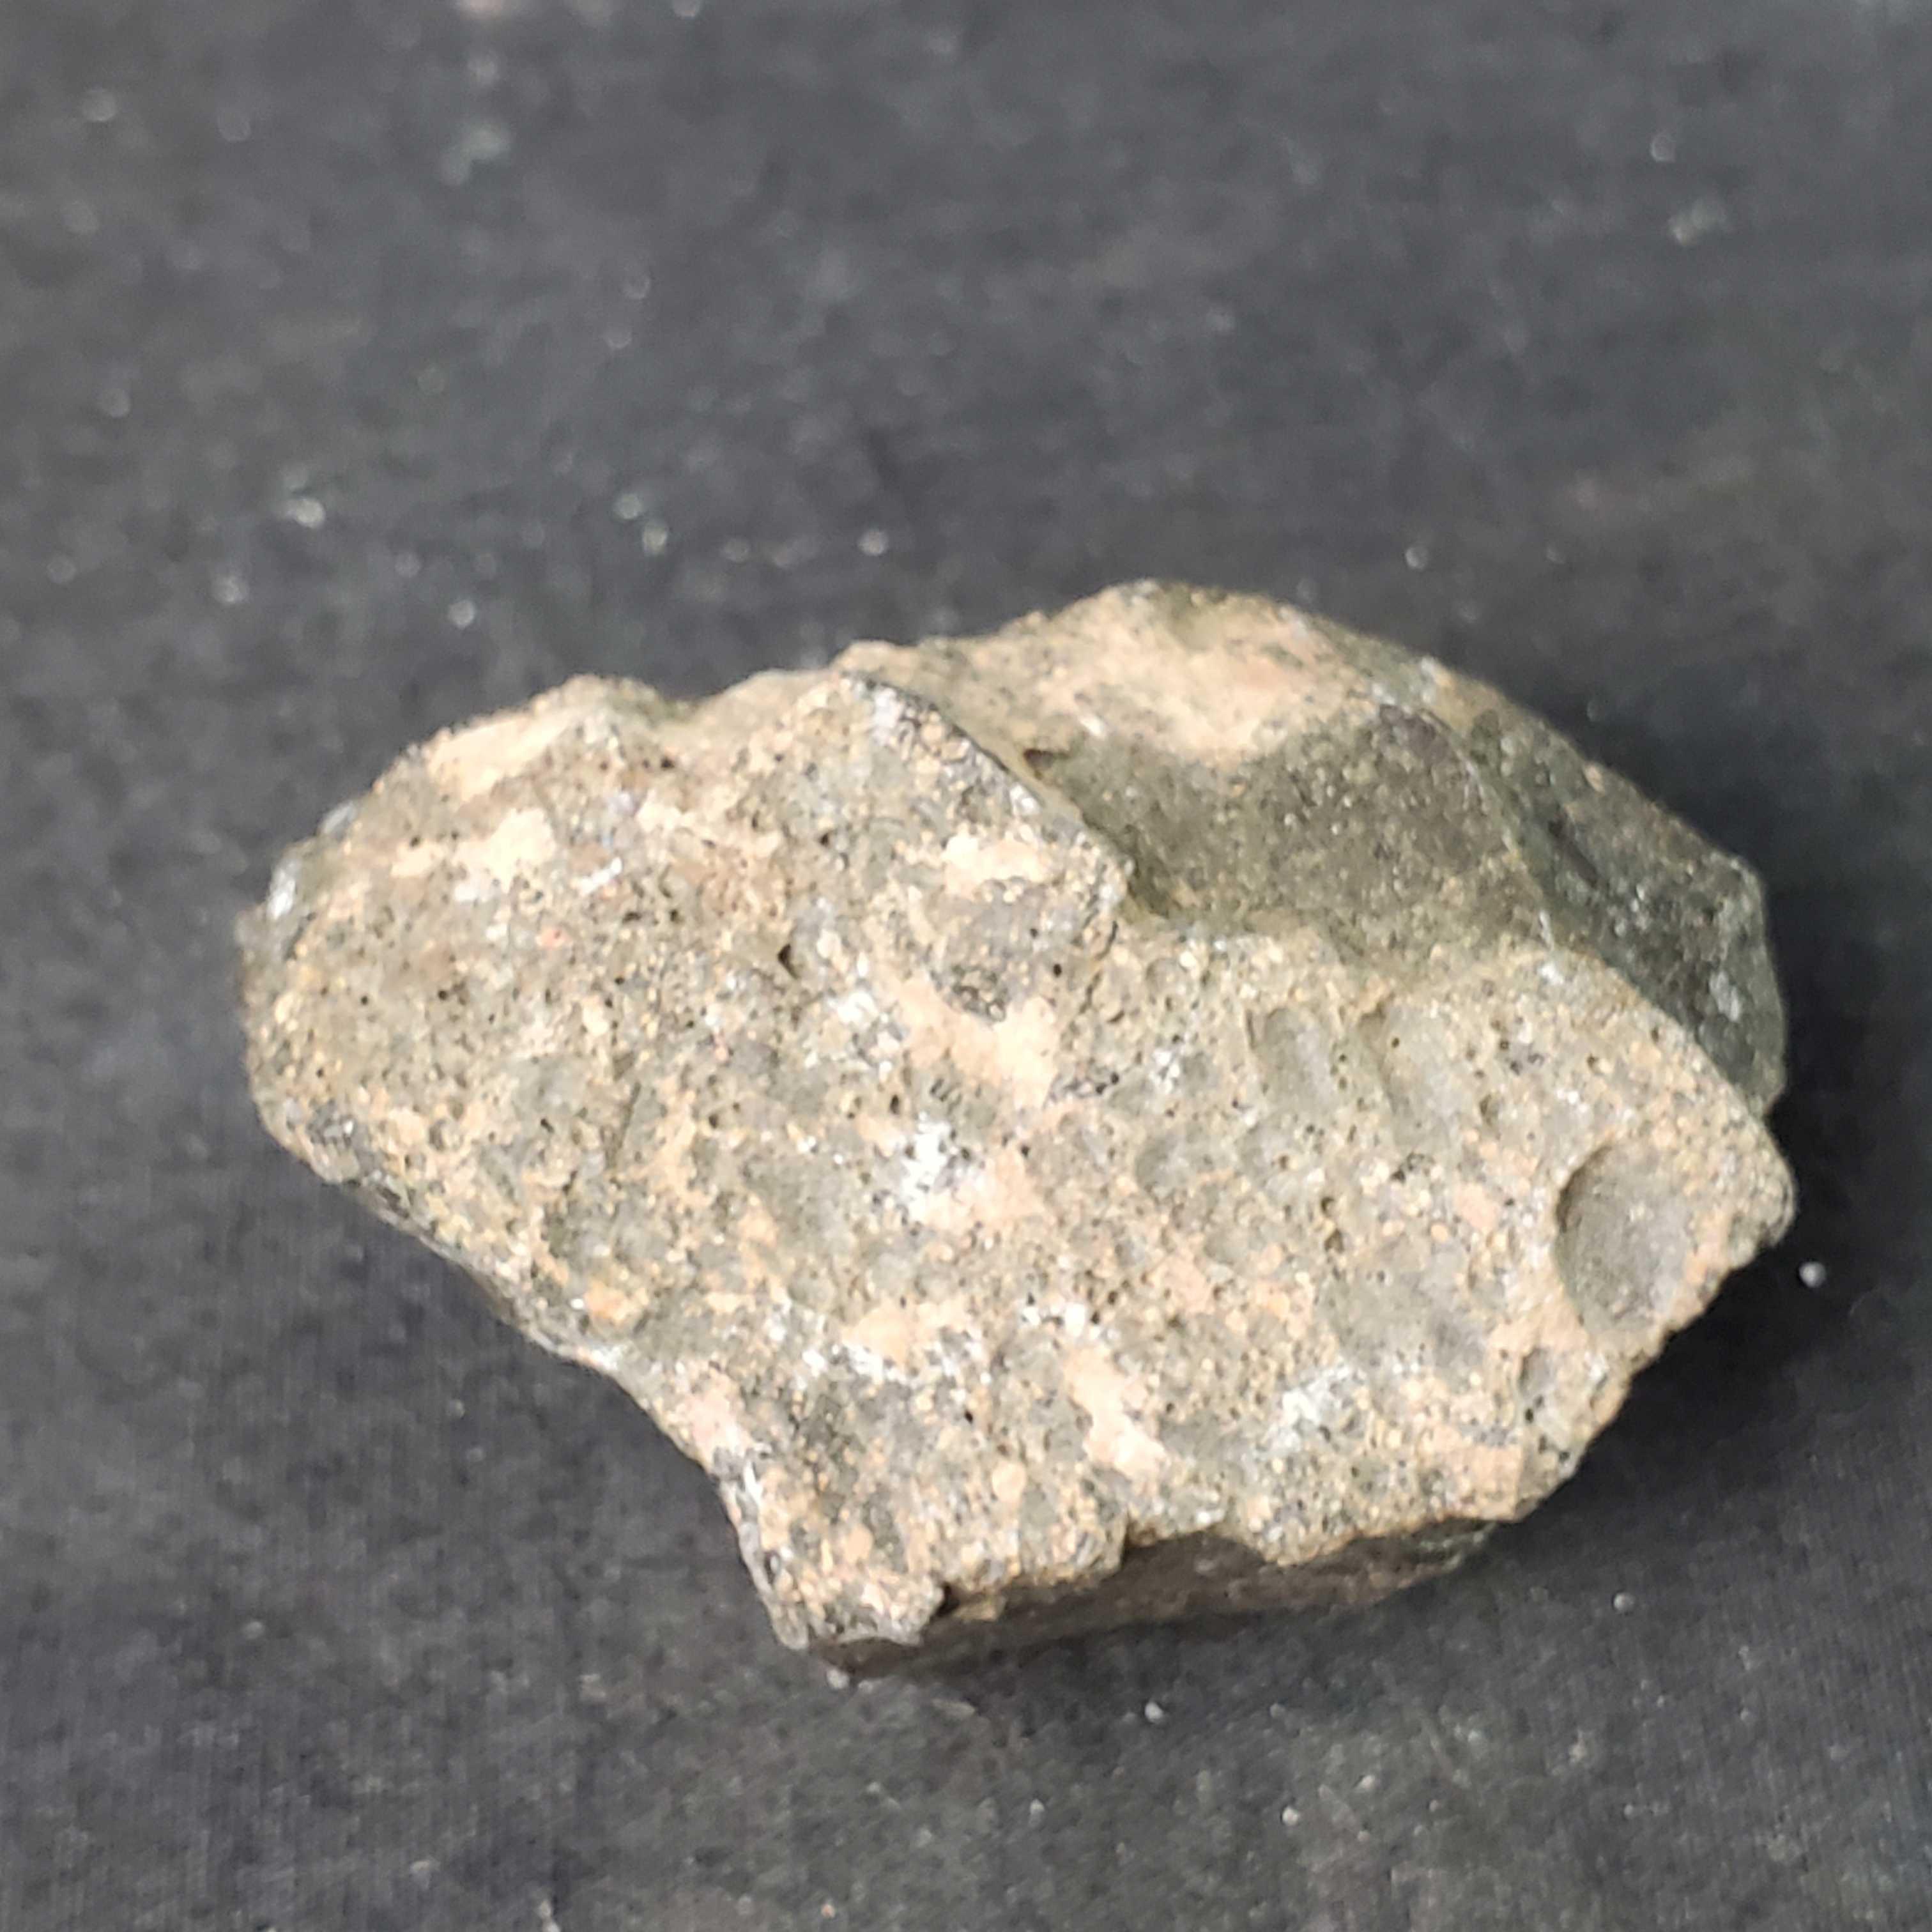 Small sterilite container of rock/mineral specimens Variscite Cuprite Barite more